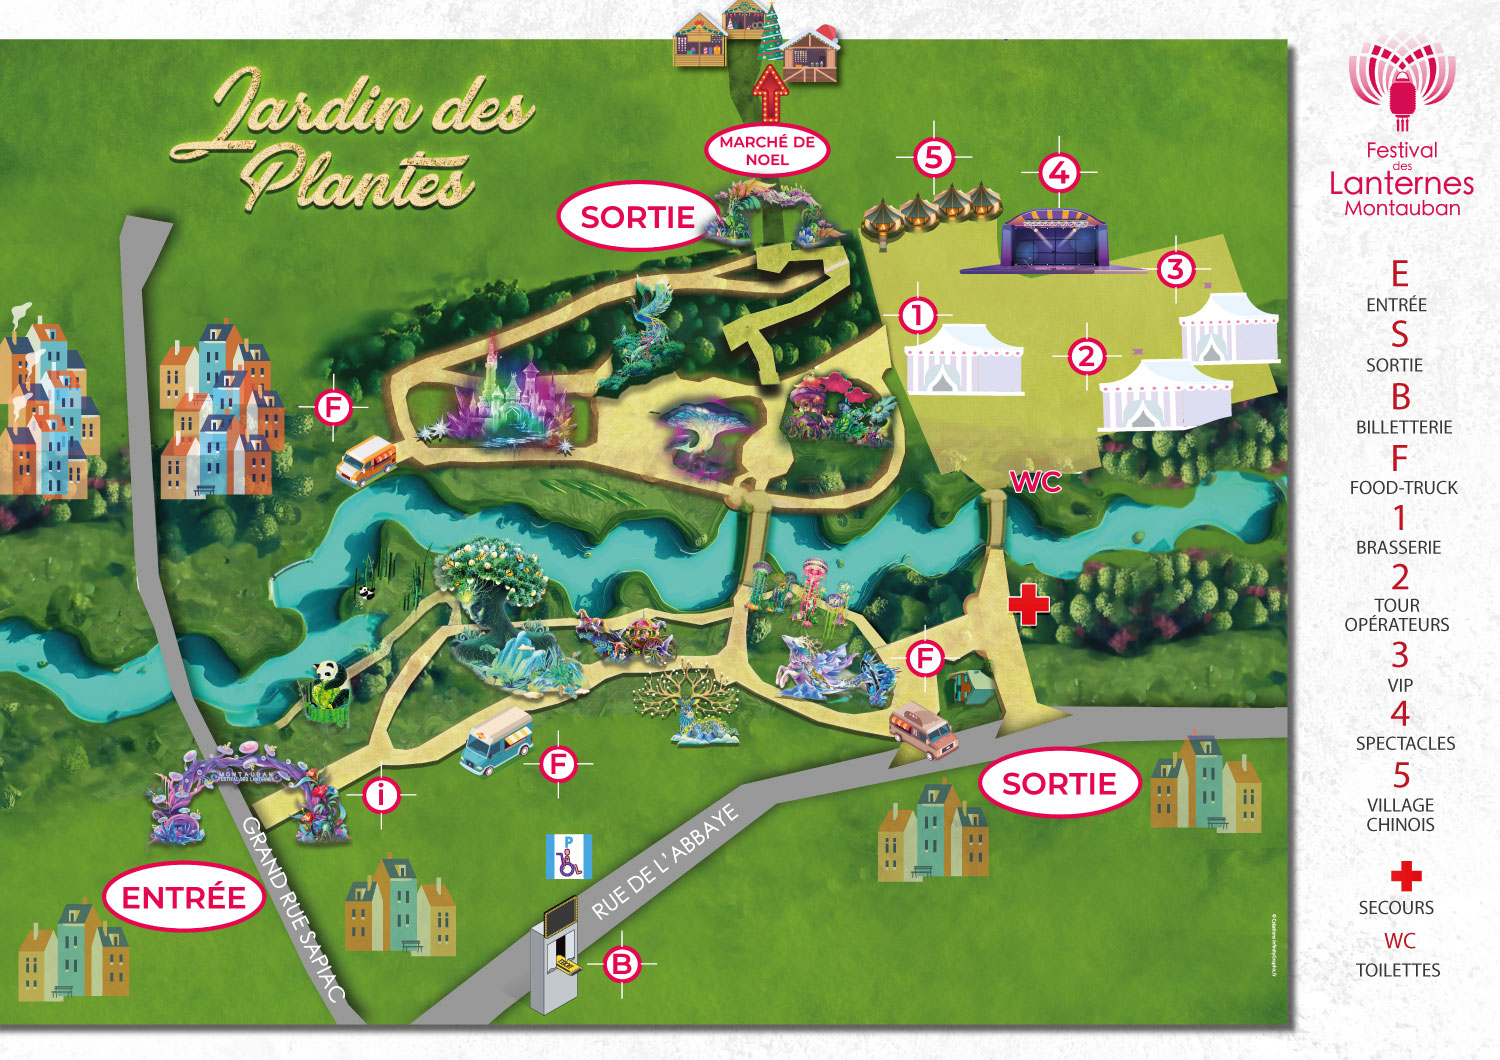 Plan du Festival des Lanternes Montauban - Création graphique ©Infinity Graphic